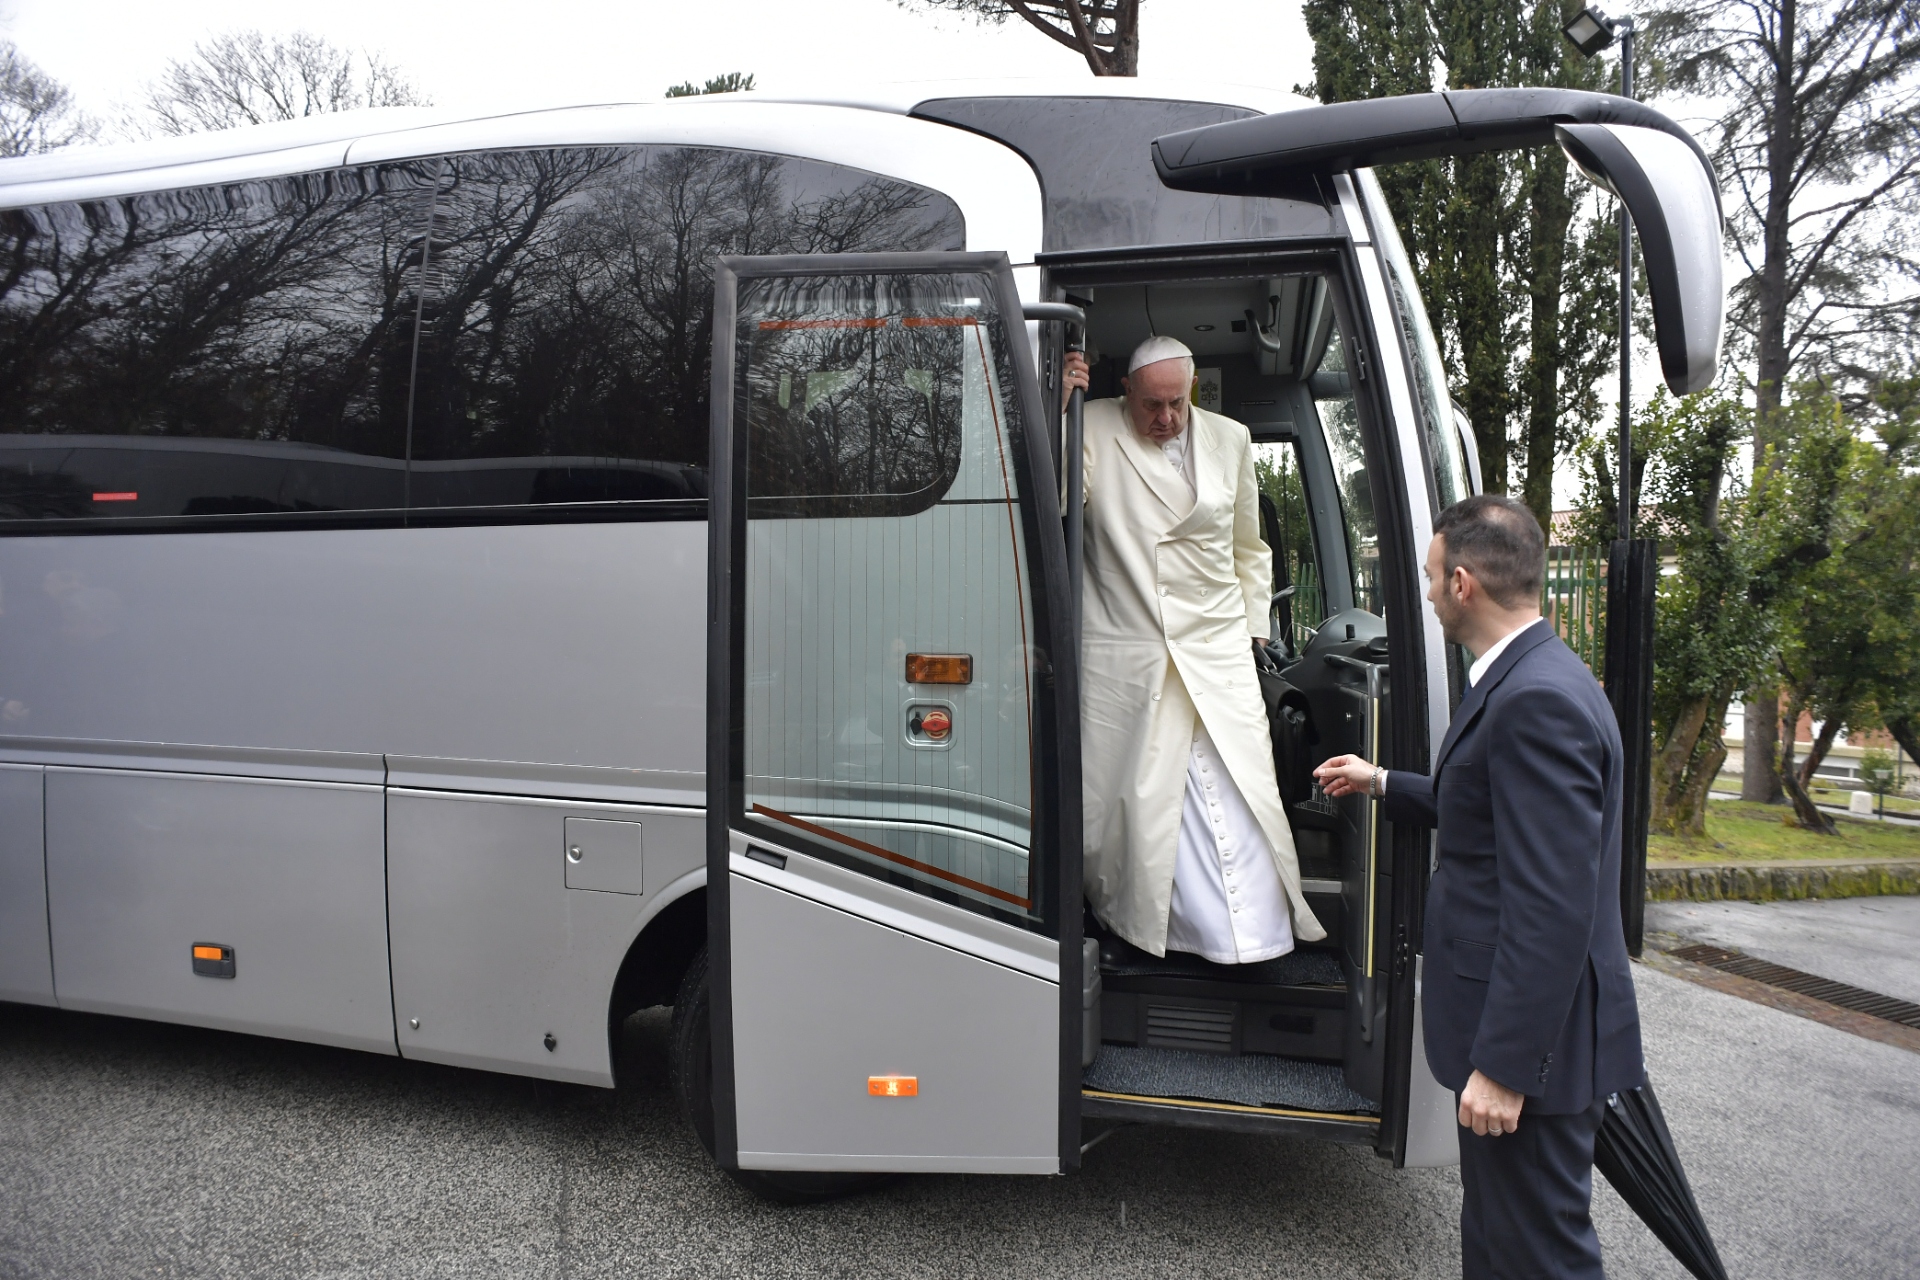 Arrivée du pape François à Ariccia 18/02/2018 © Vatican Media